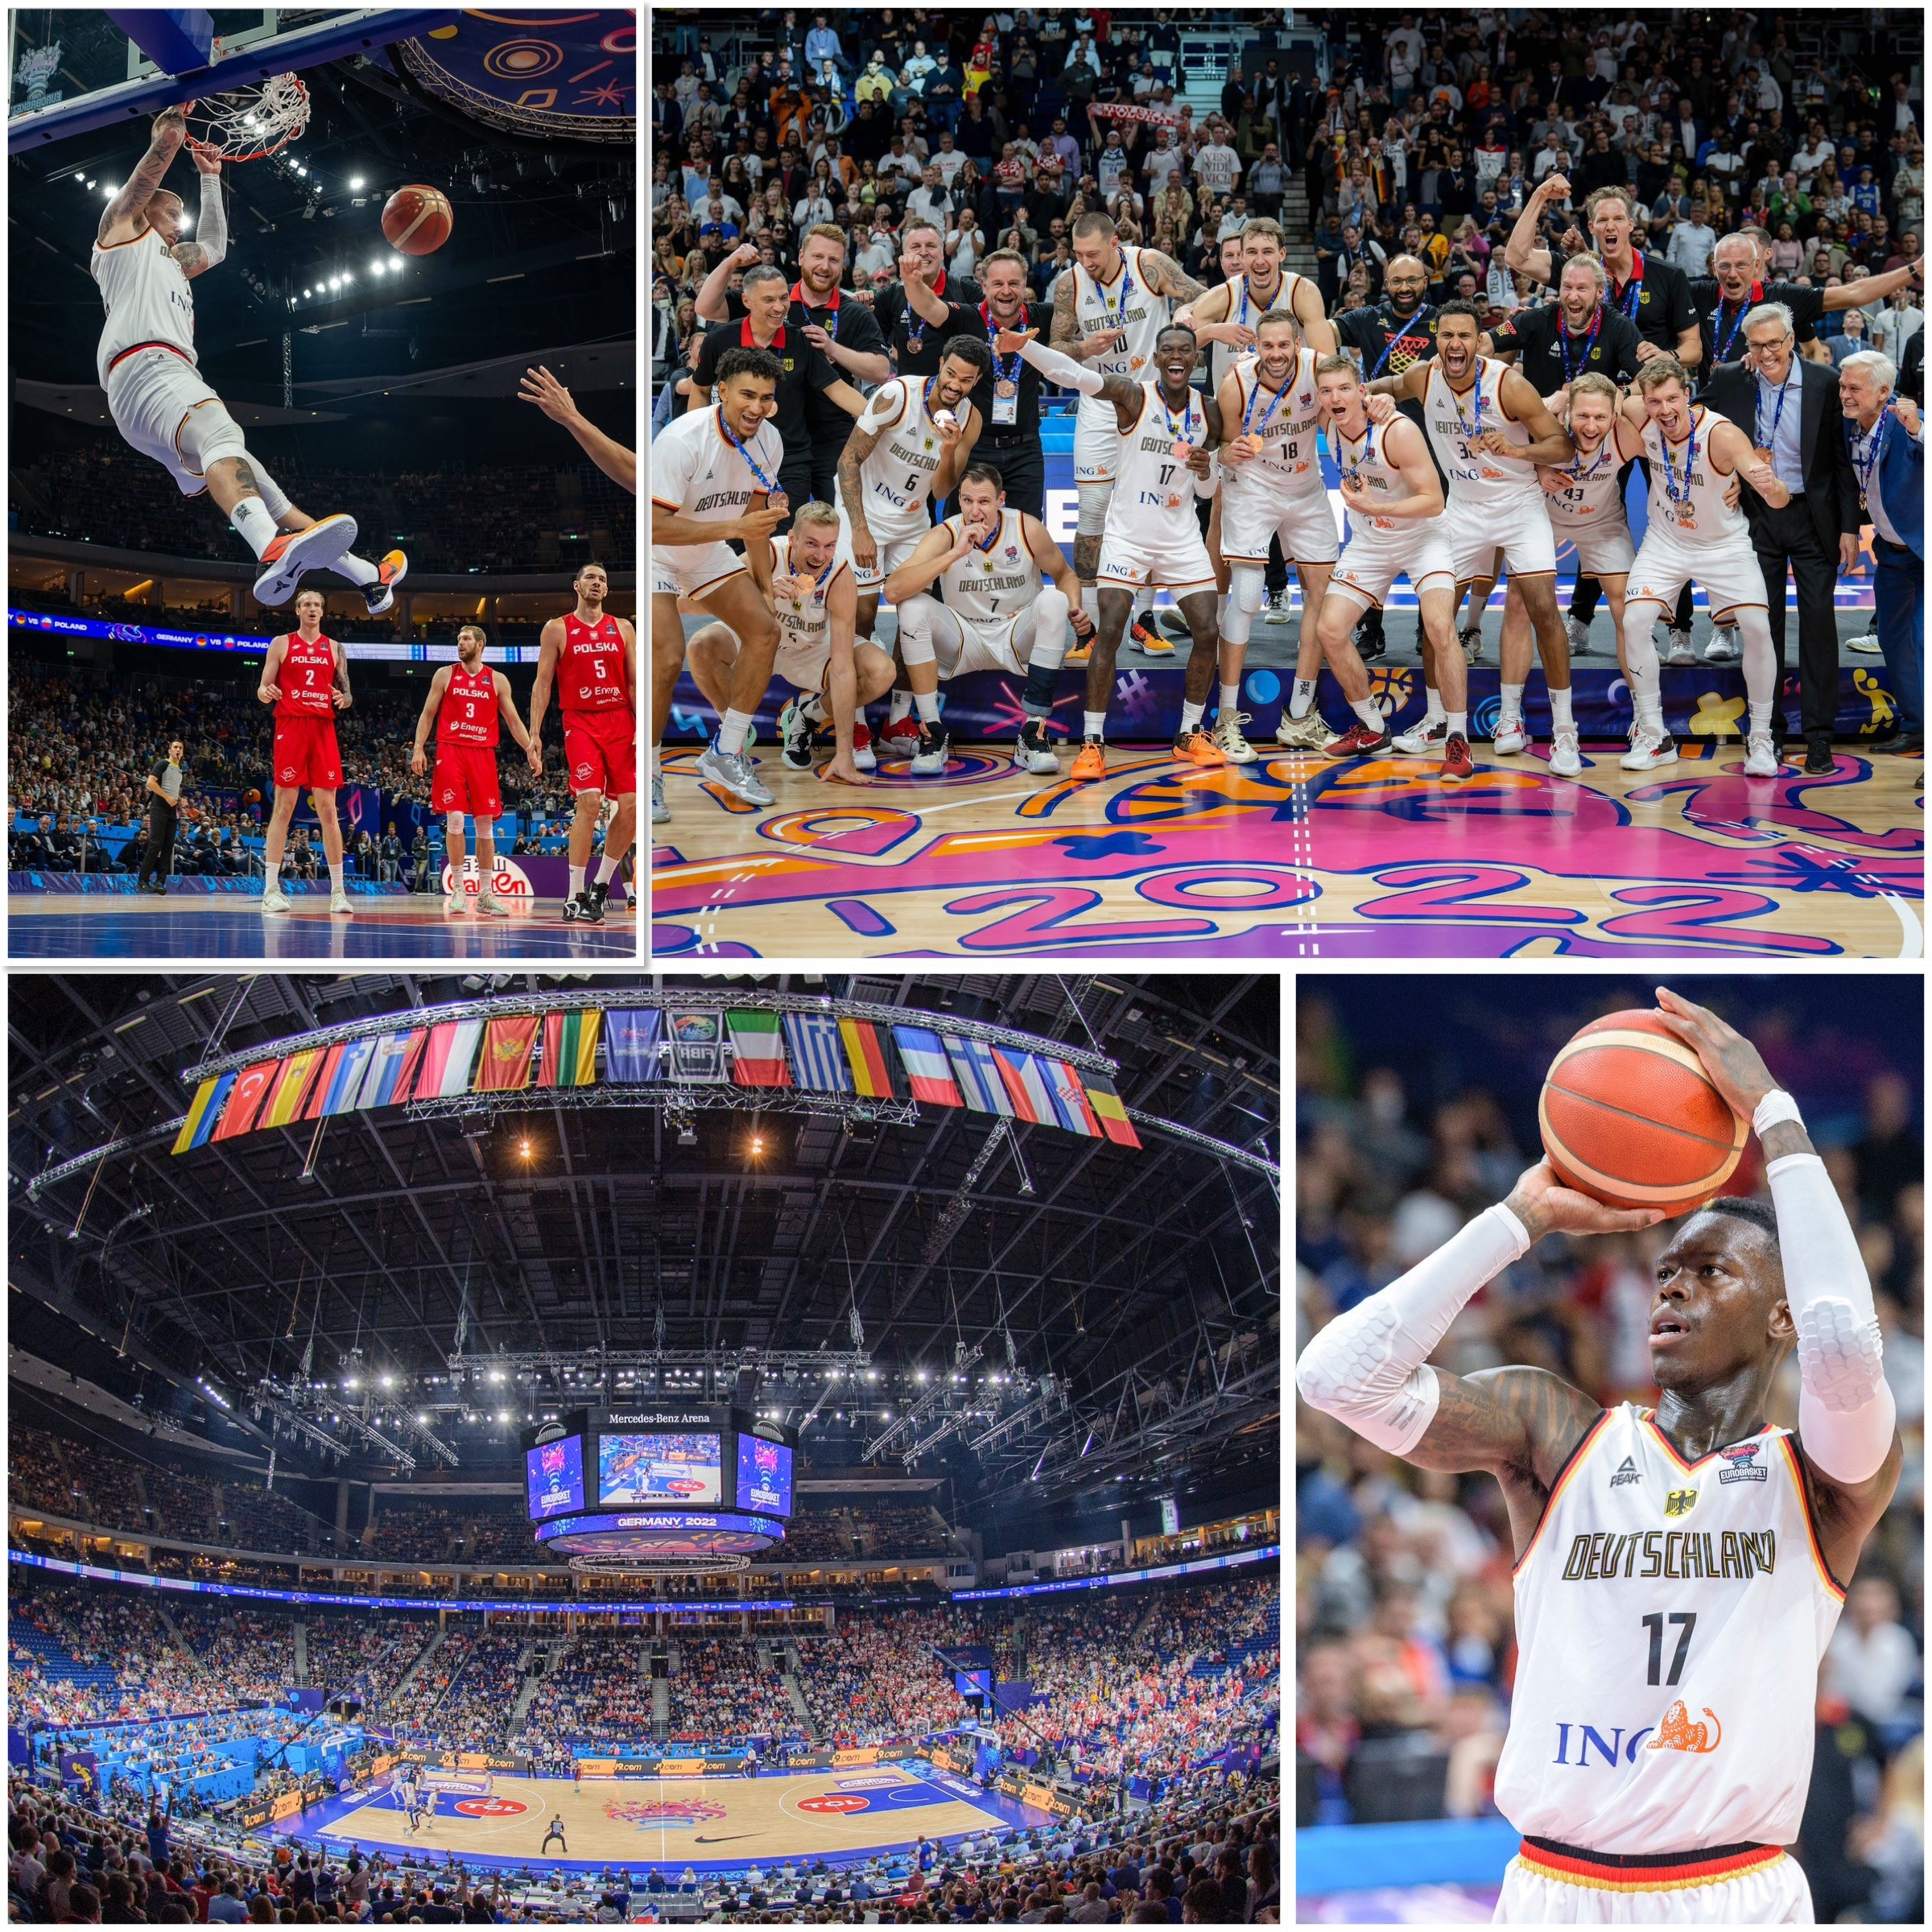 ¡El equipo de EuroBaskets hace un gran trabajo!